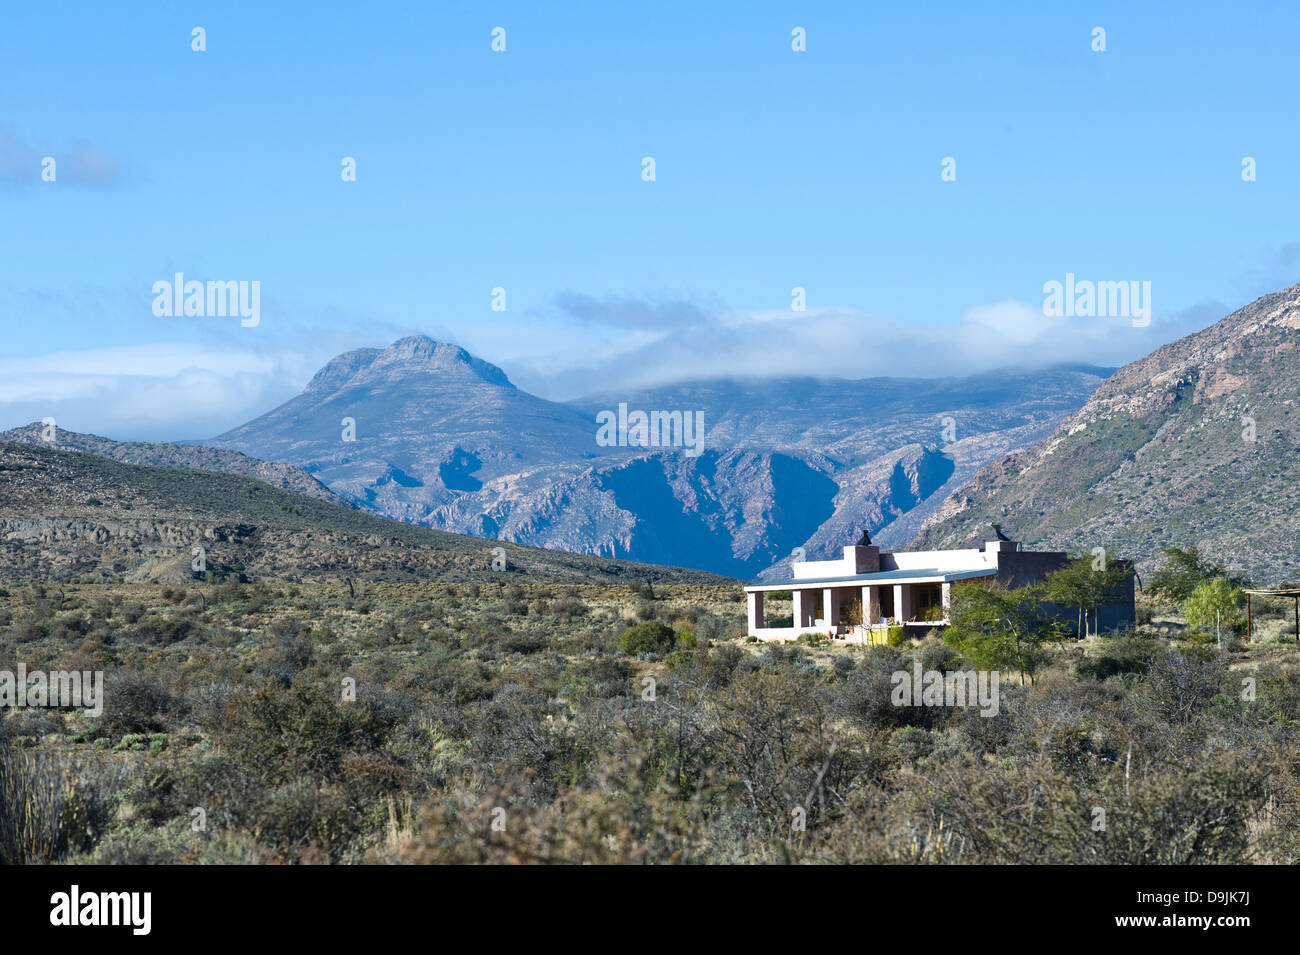 La végétation, les montagnes du Karoo et house, Prince Albert, Western Cape, Afrique du Sud Banque D'Images